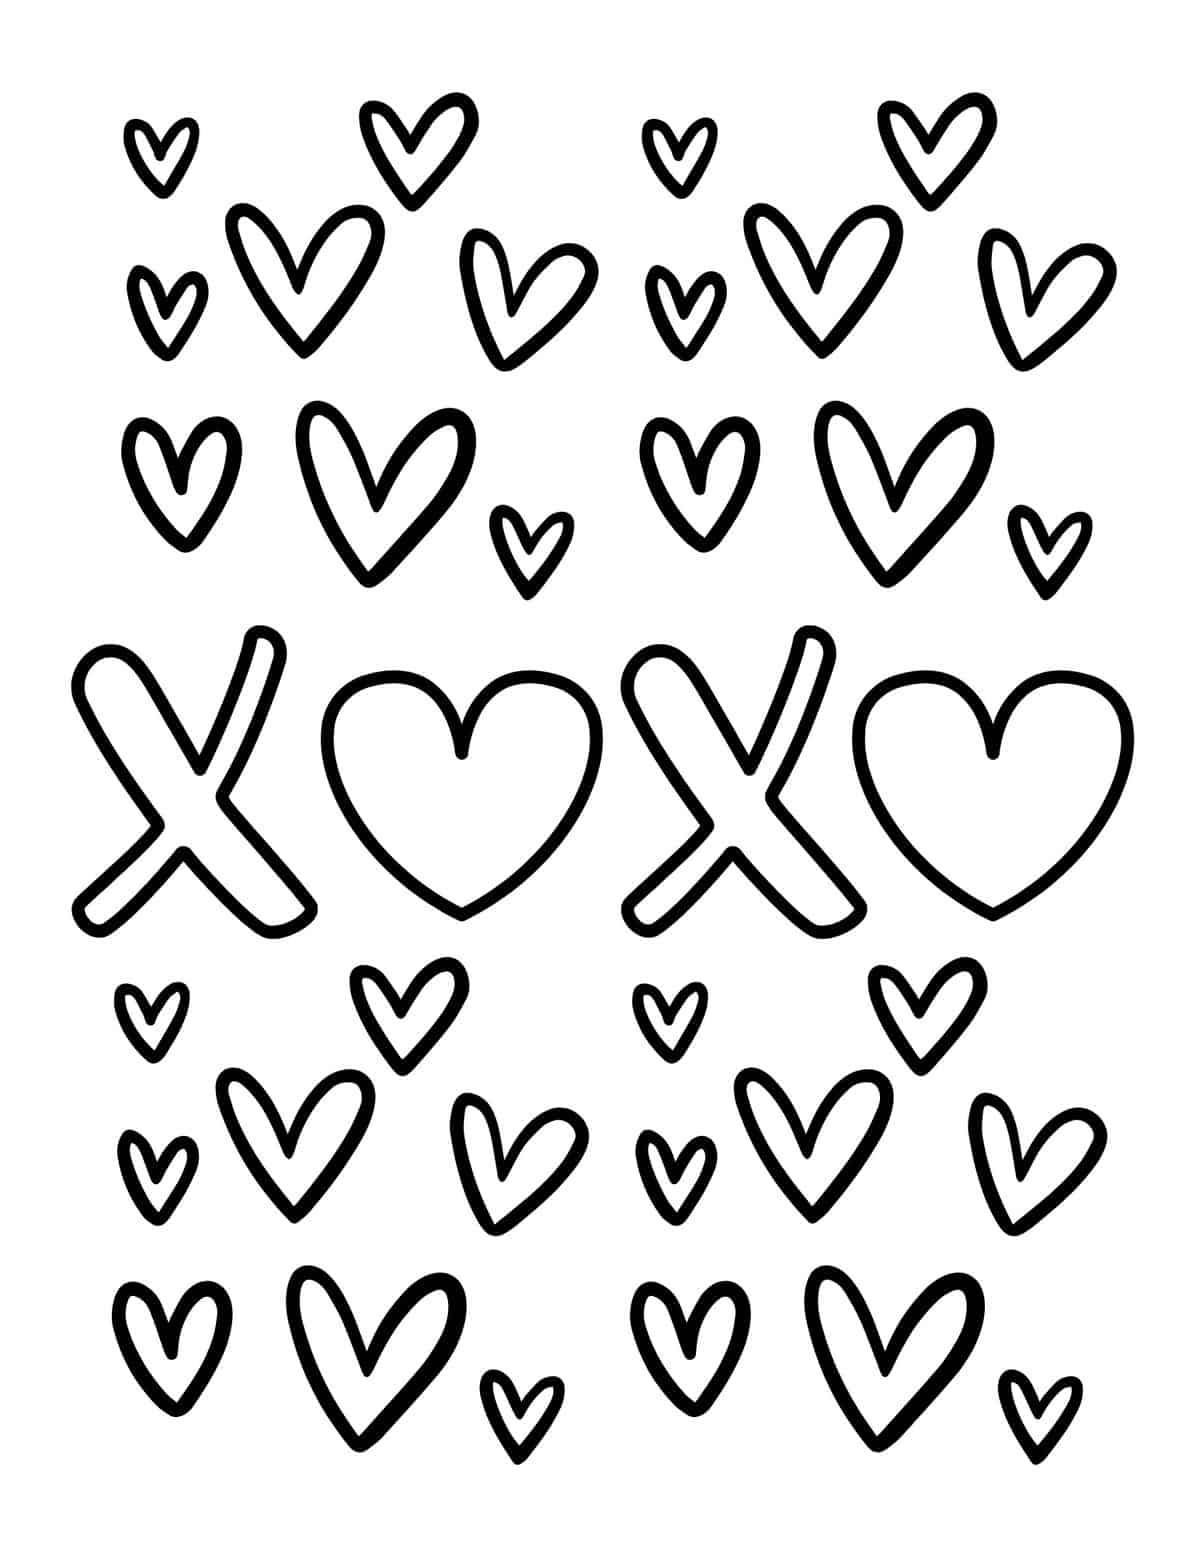 xoxo hearts coloring page